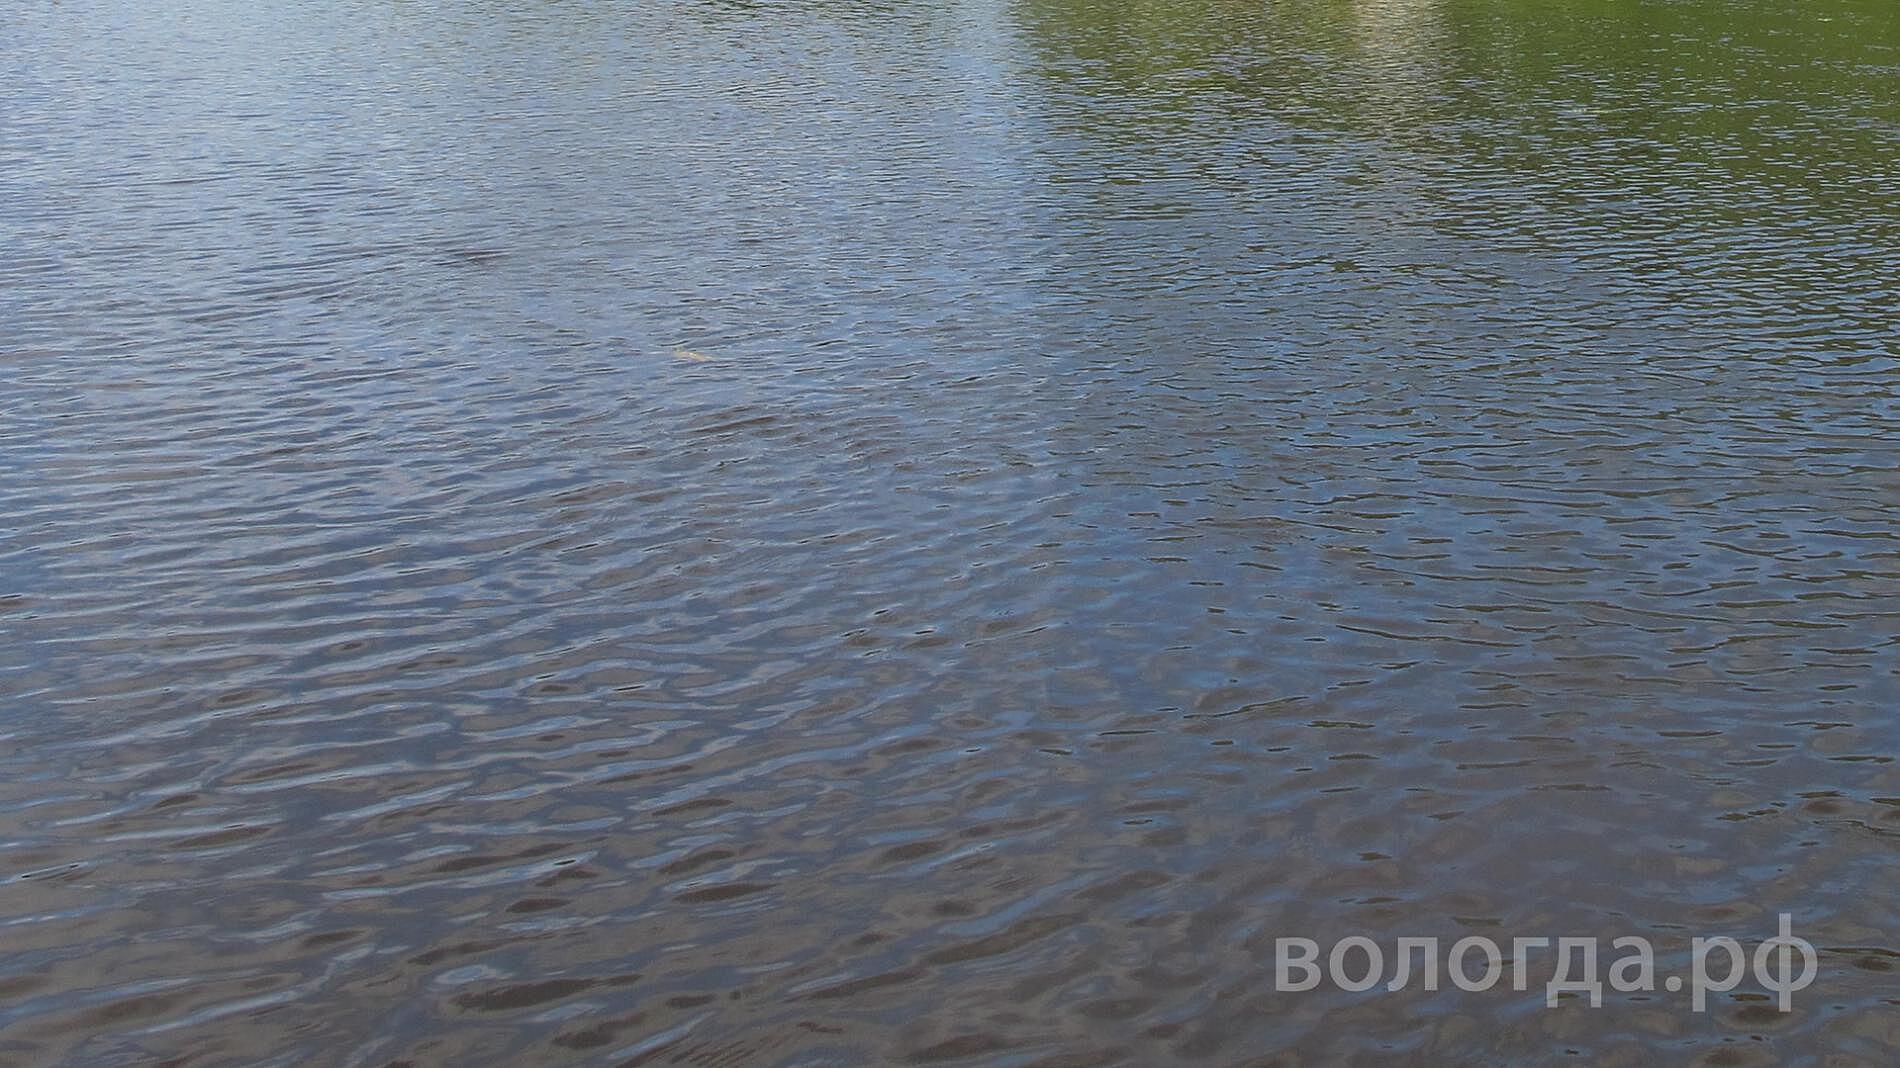 В Вологде женщина решила на спор переплыть реку и чуть не утонула